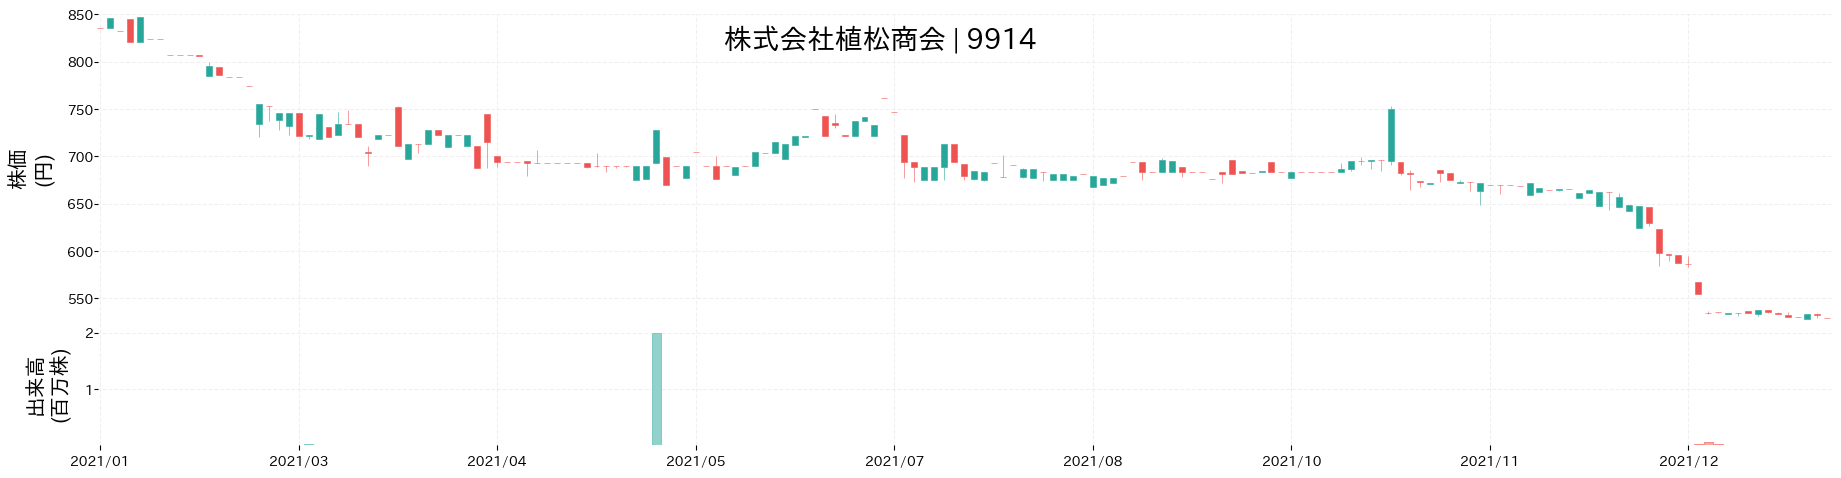 植松商会の株価推移(2021)